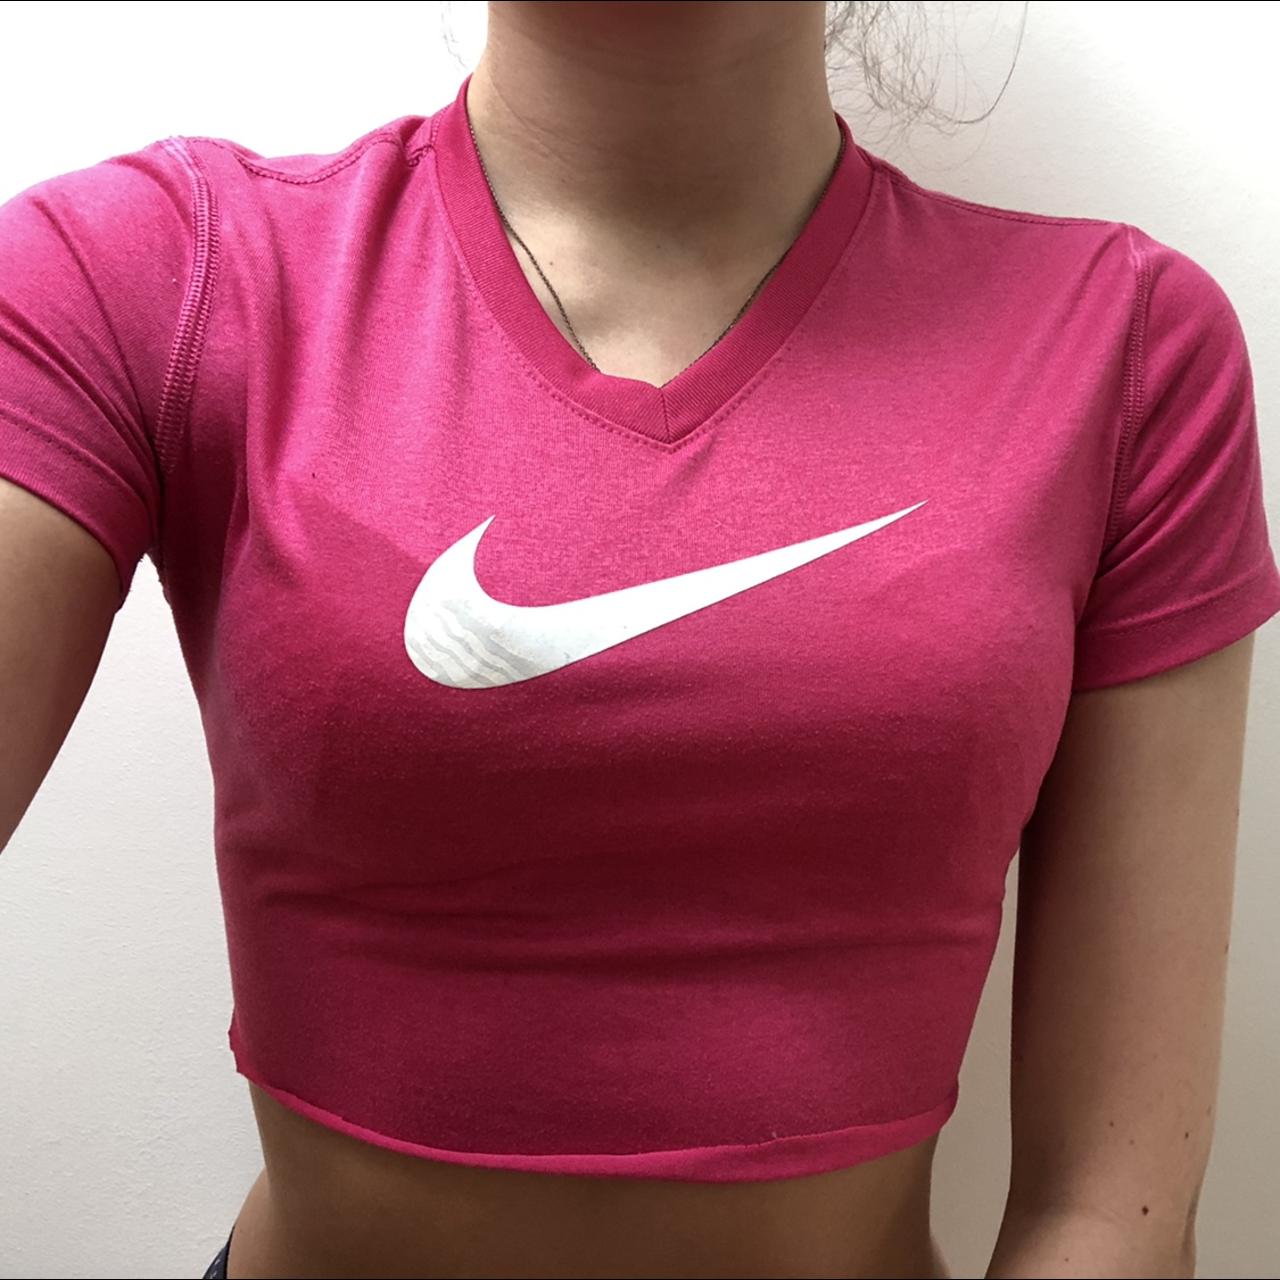 Nike Chicago Cubs T Shirt Womens Size Medium. New.  - Depop